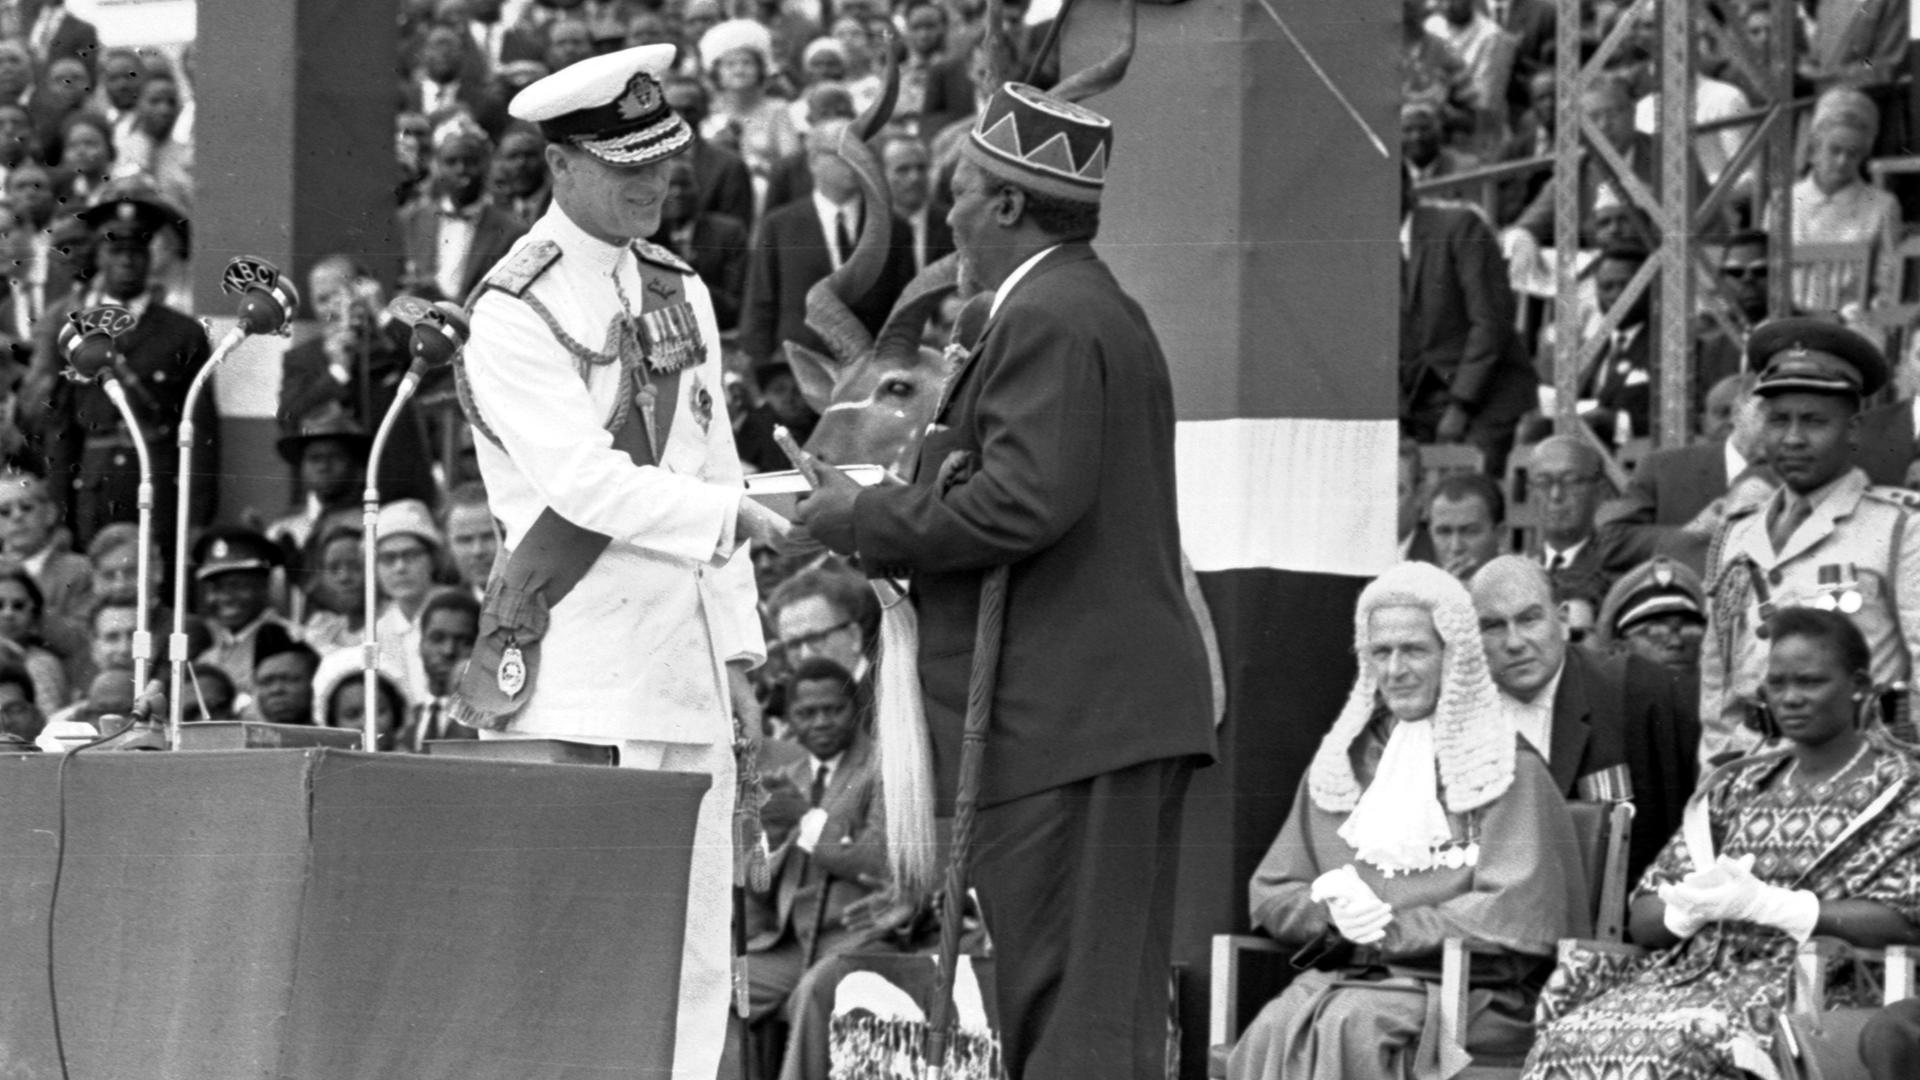 Festakt mit Prinz Philip und Jomo Kenyatta.